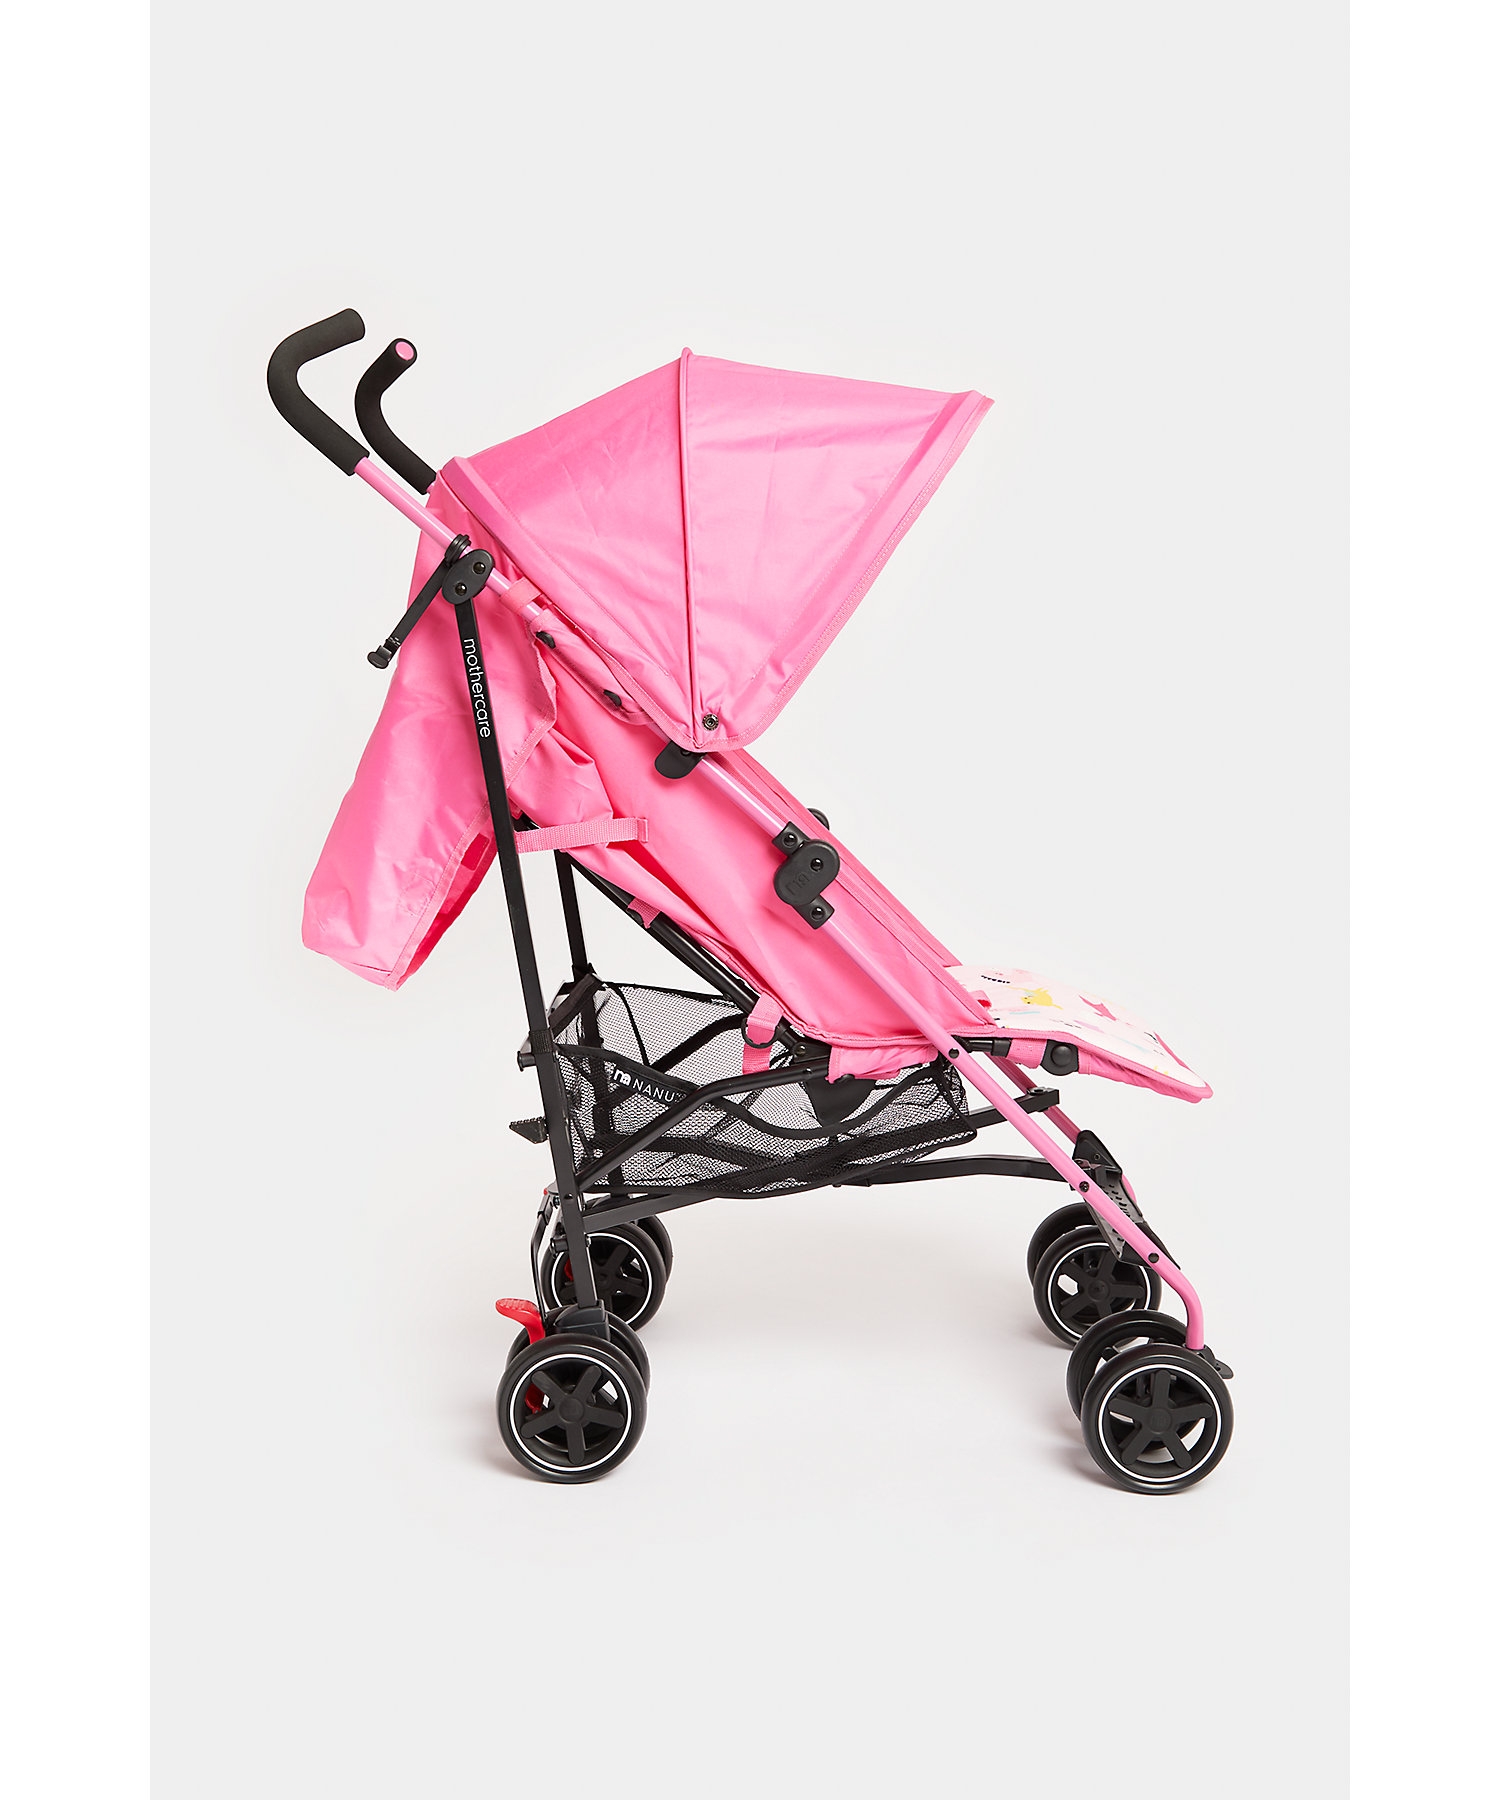 Mothercare Nanu Stroller Transport Blue